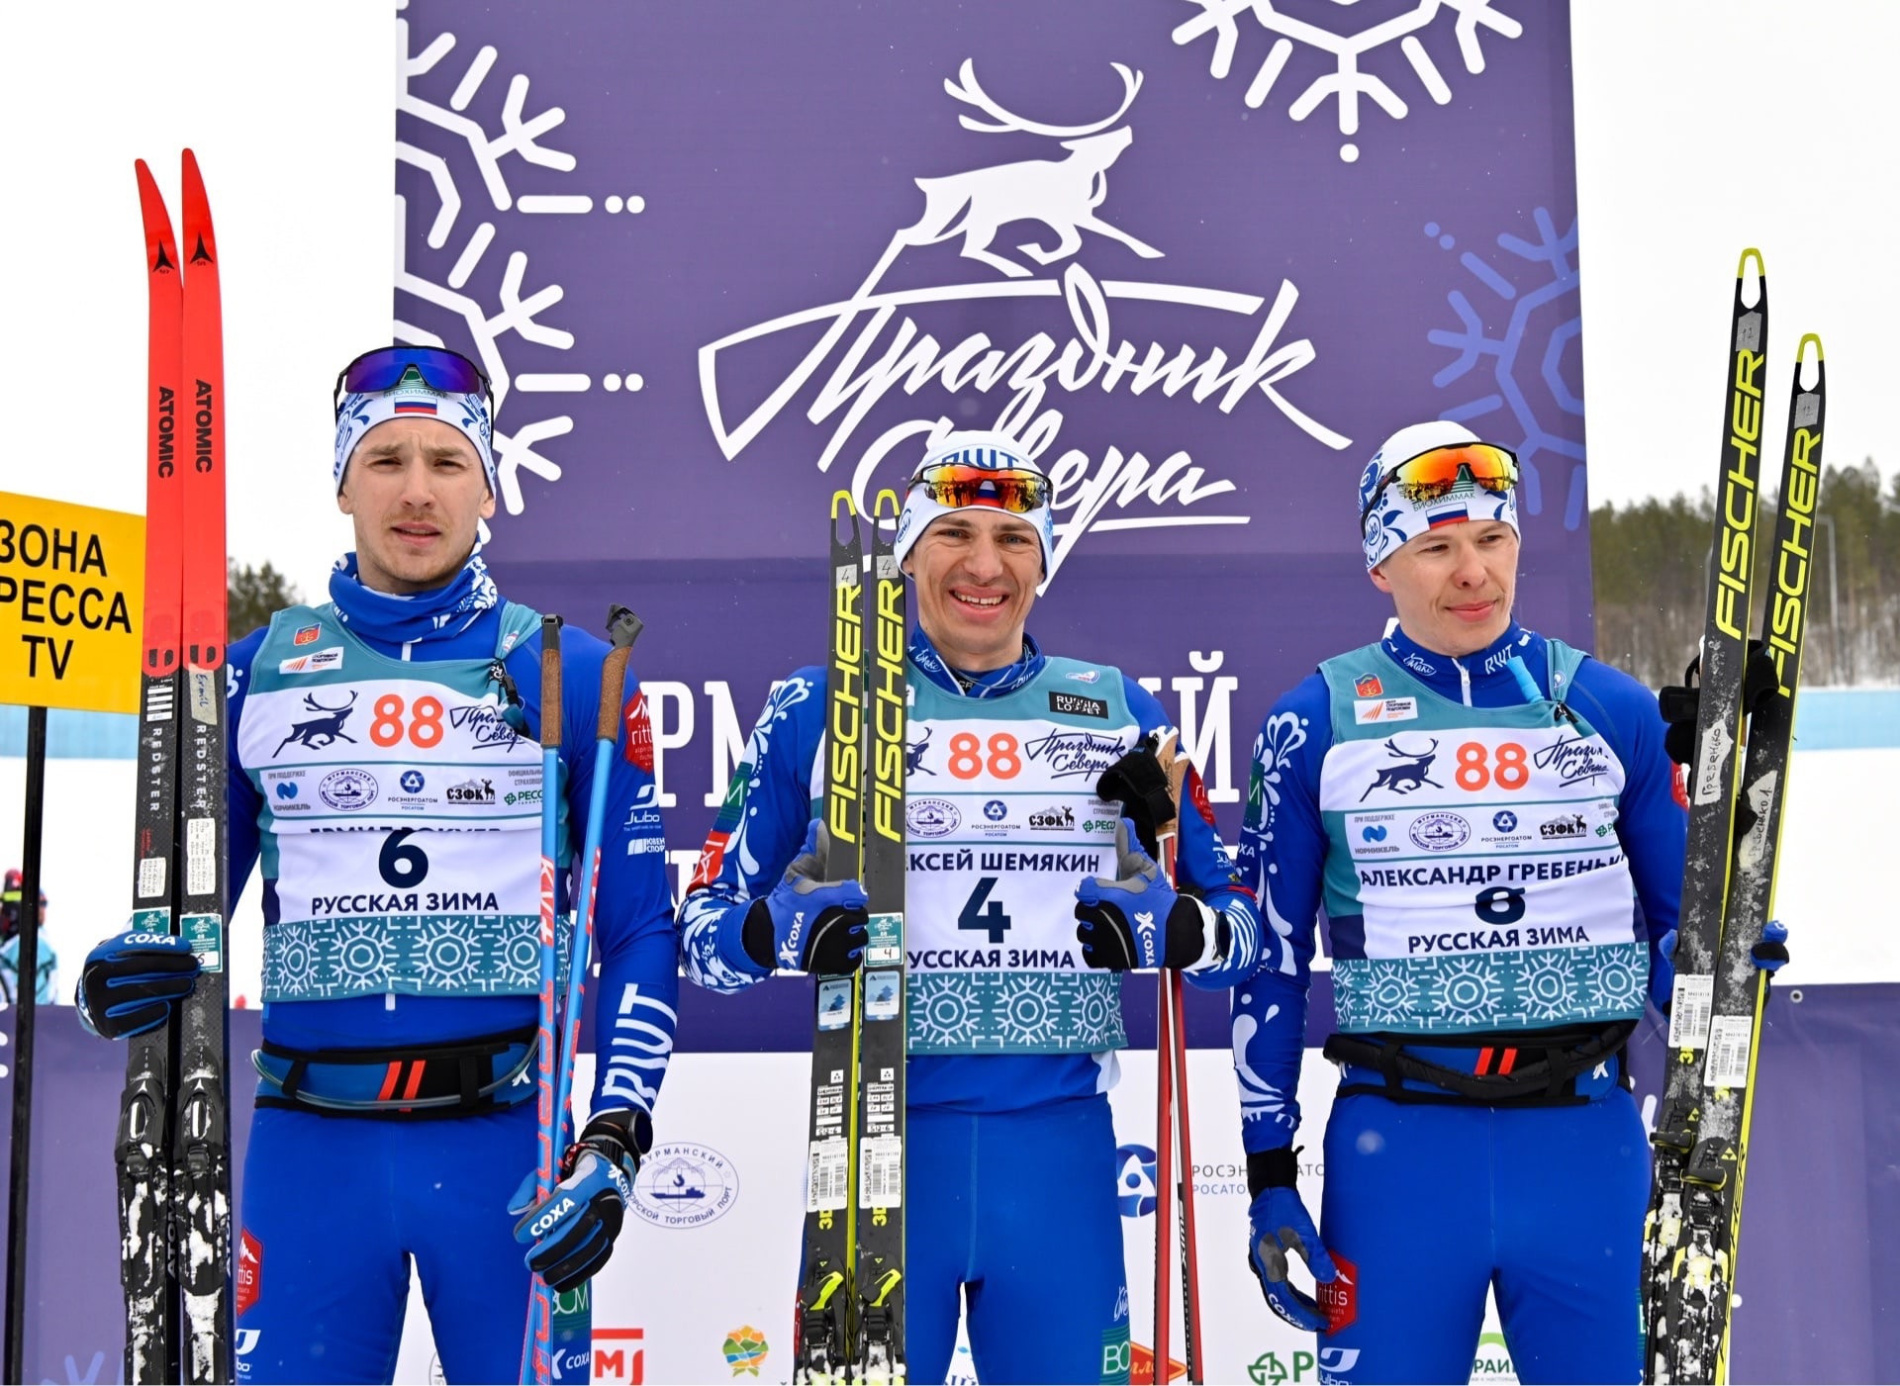 Фото: Победители марафона слева направо - Ермил Вокуев, Алексей Шемякин и Александр Гребенько